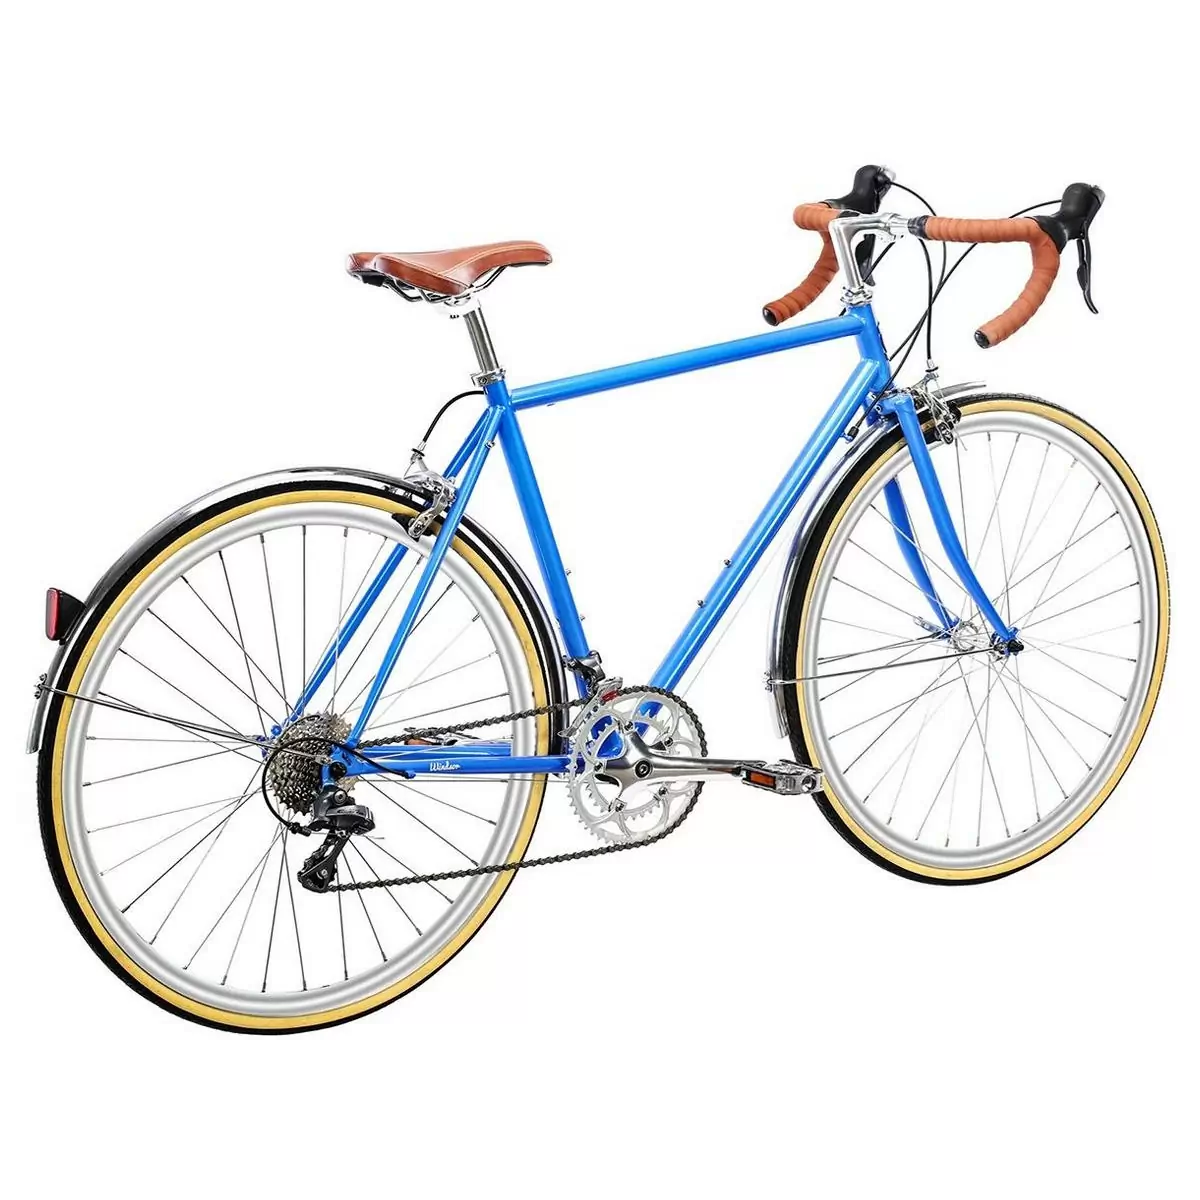 Bicicleta urbana TROY 16spd azul windsor pequena 58cm #2